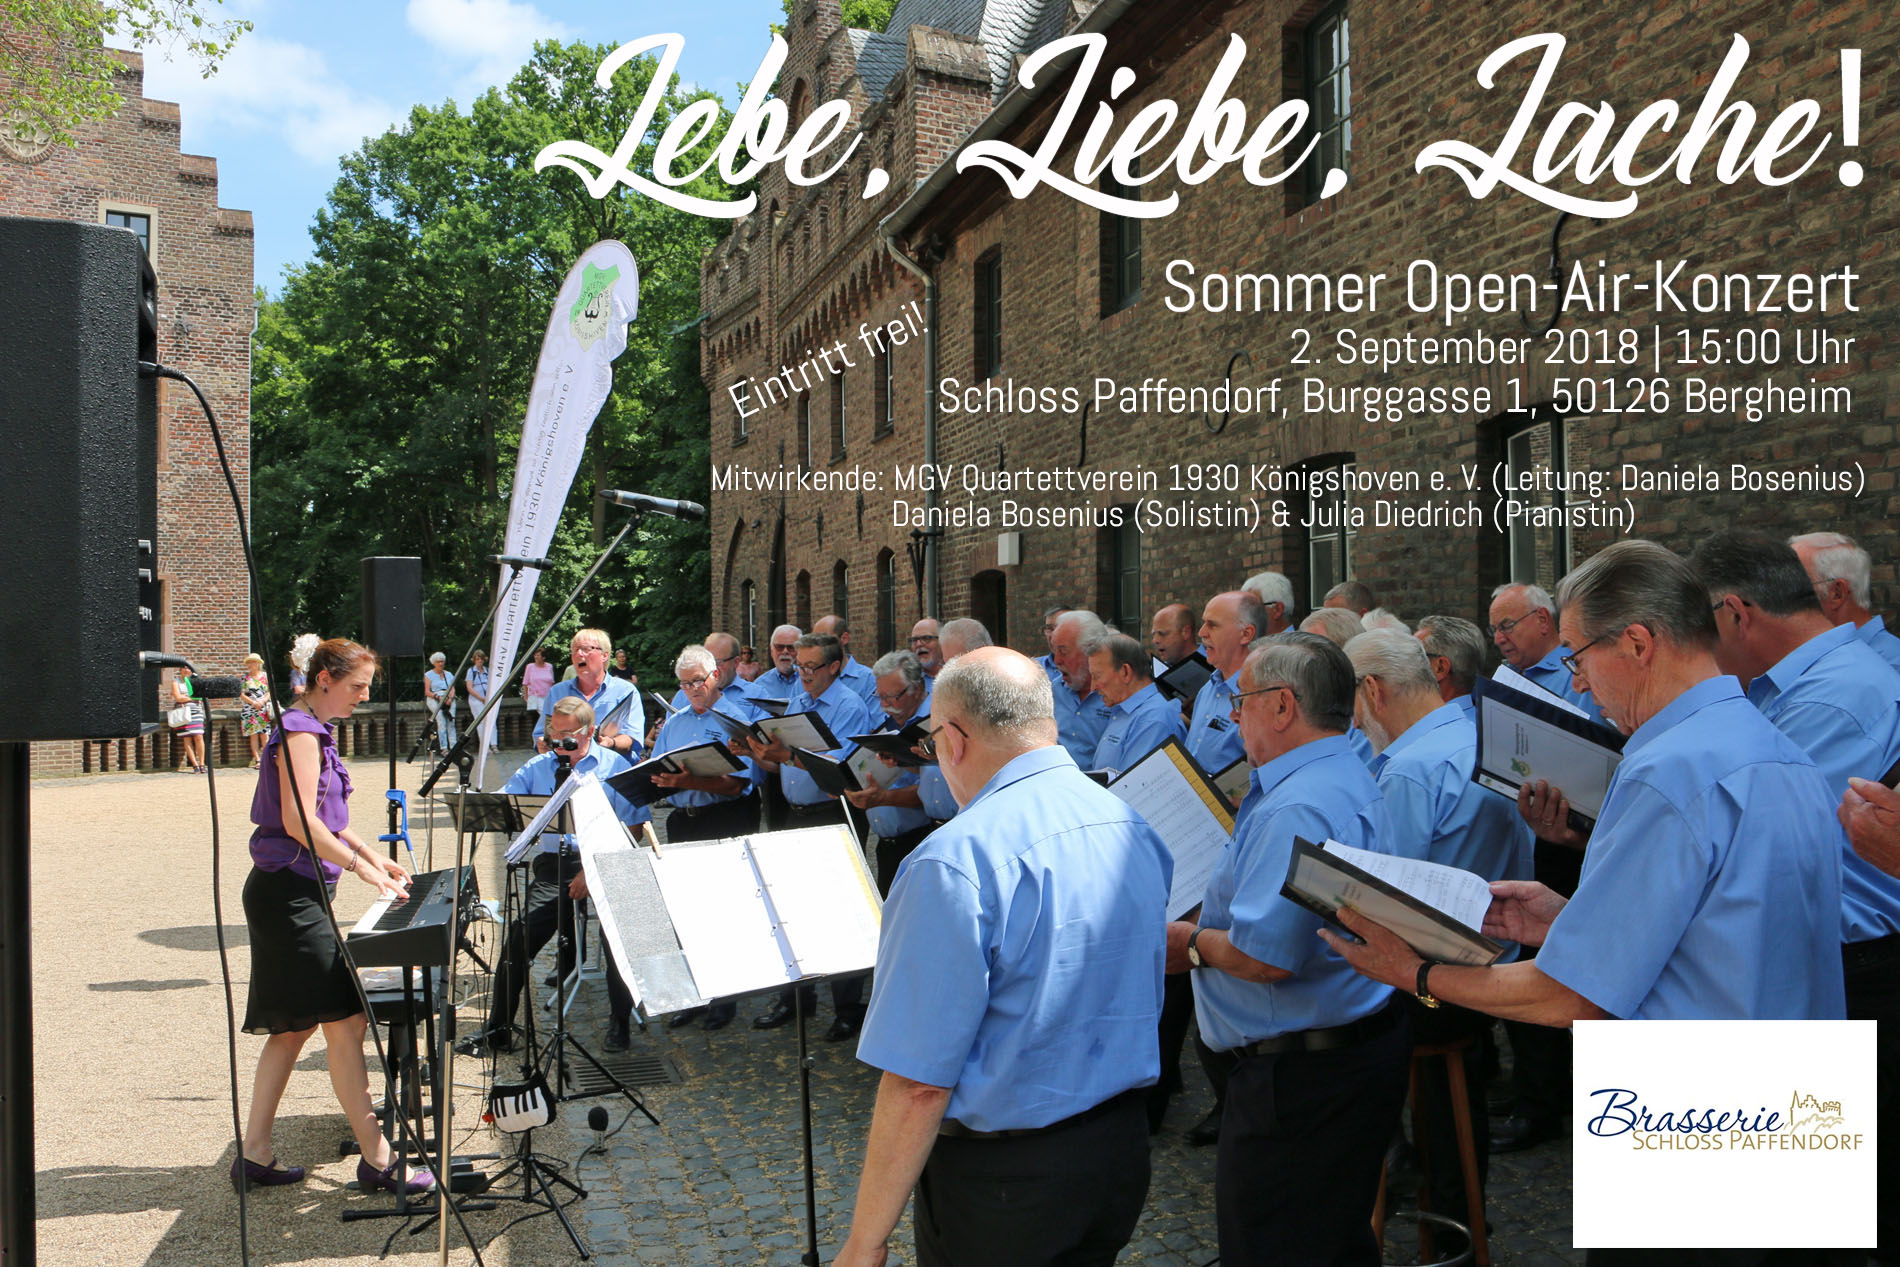 Für den 2. September 2018, 15:00 Uhr, lädt der MGV Quartettverein Königshoven zum inzwischen schon traditionellen Sommer Open-Air-Konzert unter dem Motto "Lebe, Liebe, Lache!" auf Schloss Paffendorf nach Bergheim ein. (Foto: Bastian Schlößer)